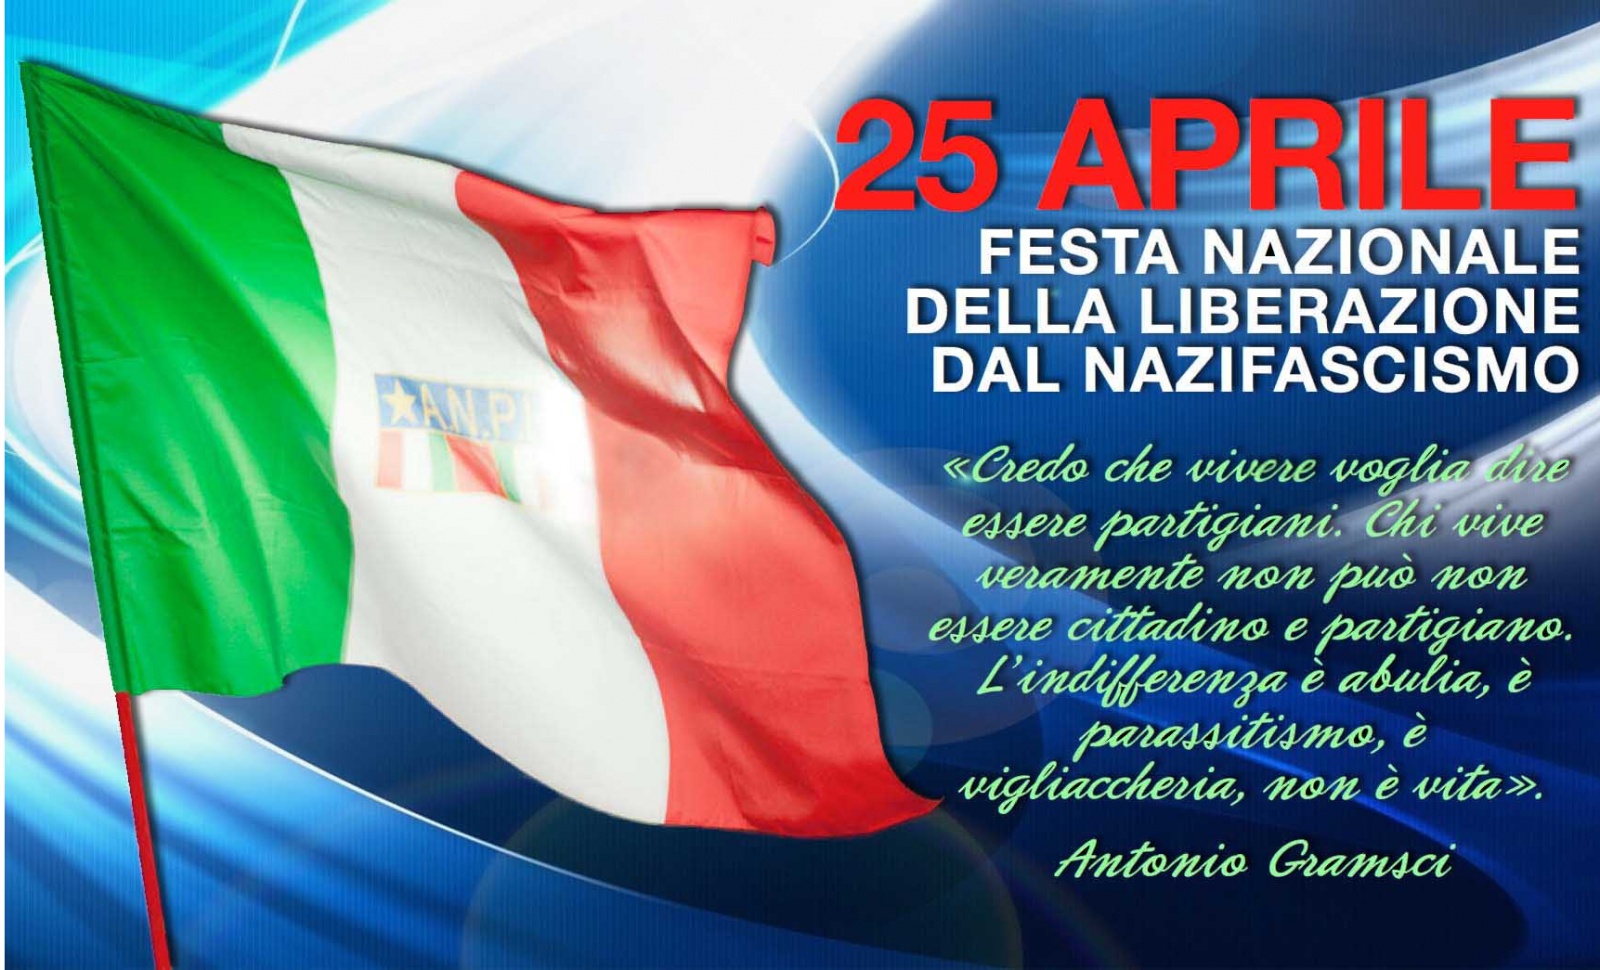 25 апреля что за праздник. 25 Aprile. 25 Апреля праздник в Италии. Открытка к festa della Liberazione. День независимости в Италии 25 апреля.